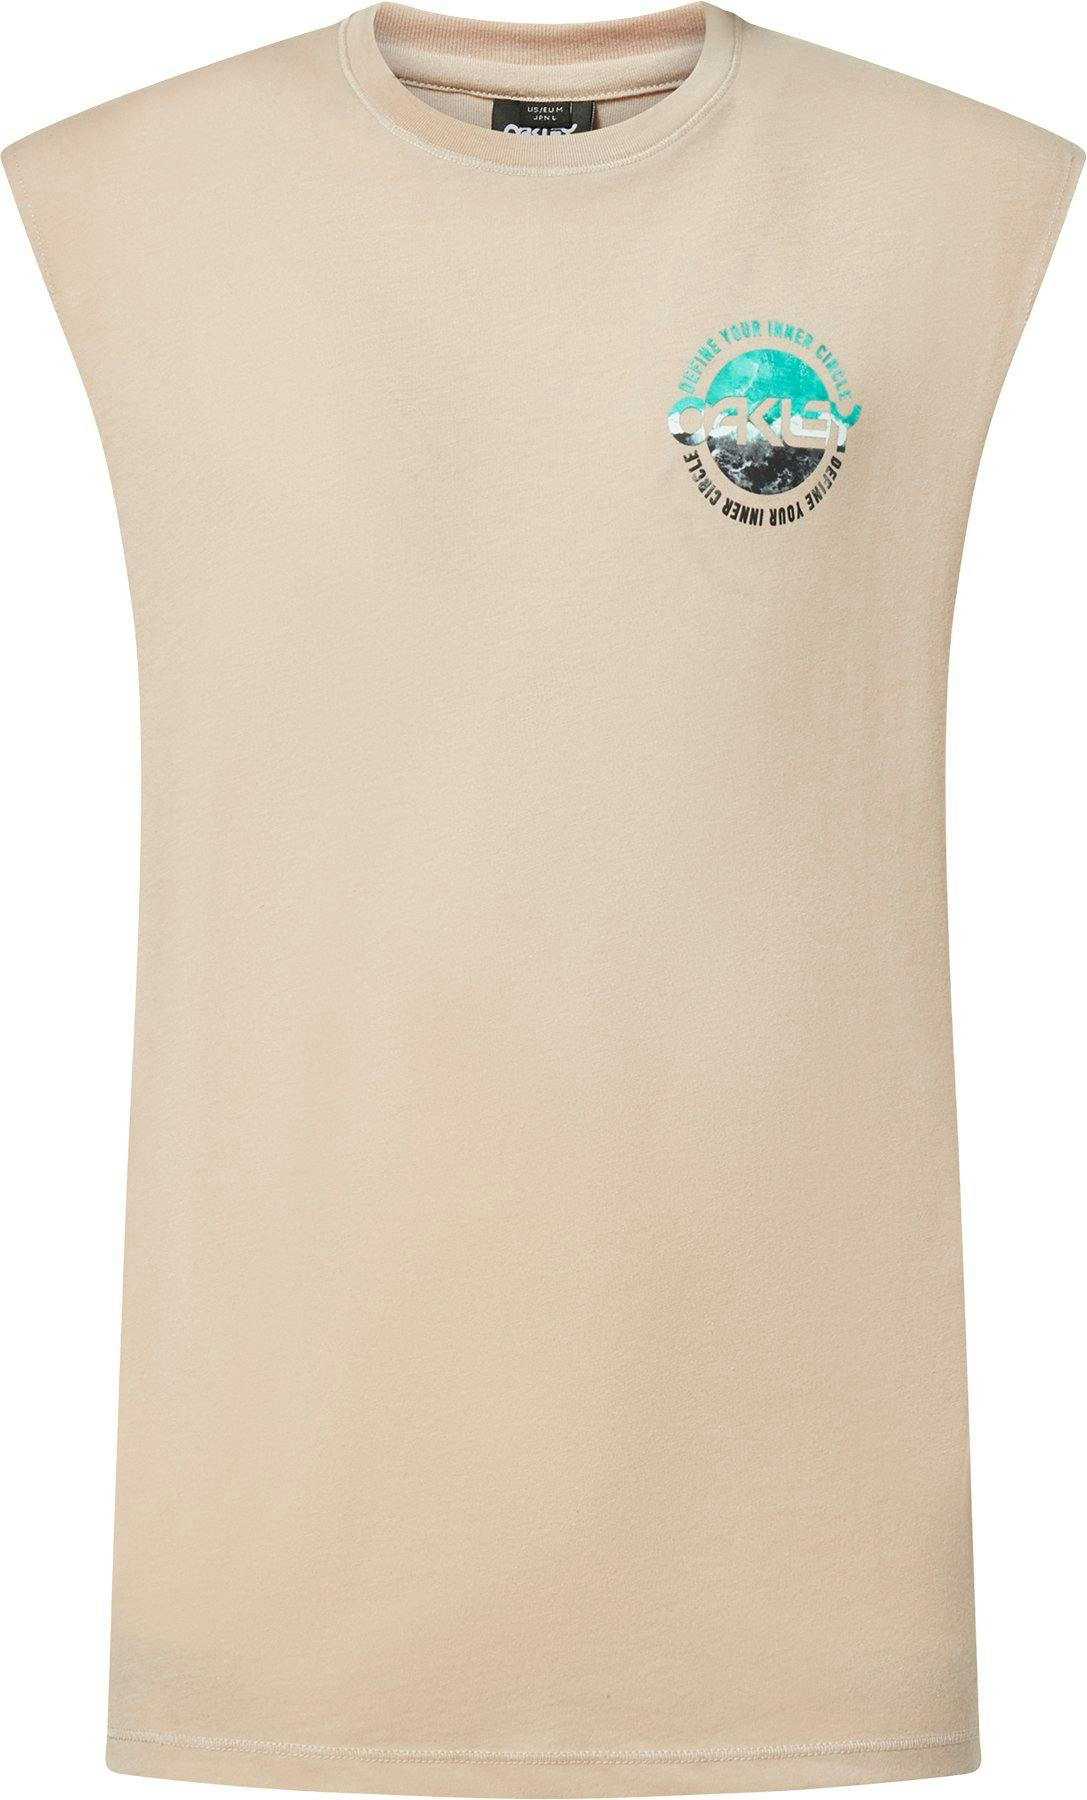 Product image for Inner Circle sleeveless T-shirt - Men’s